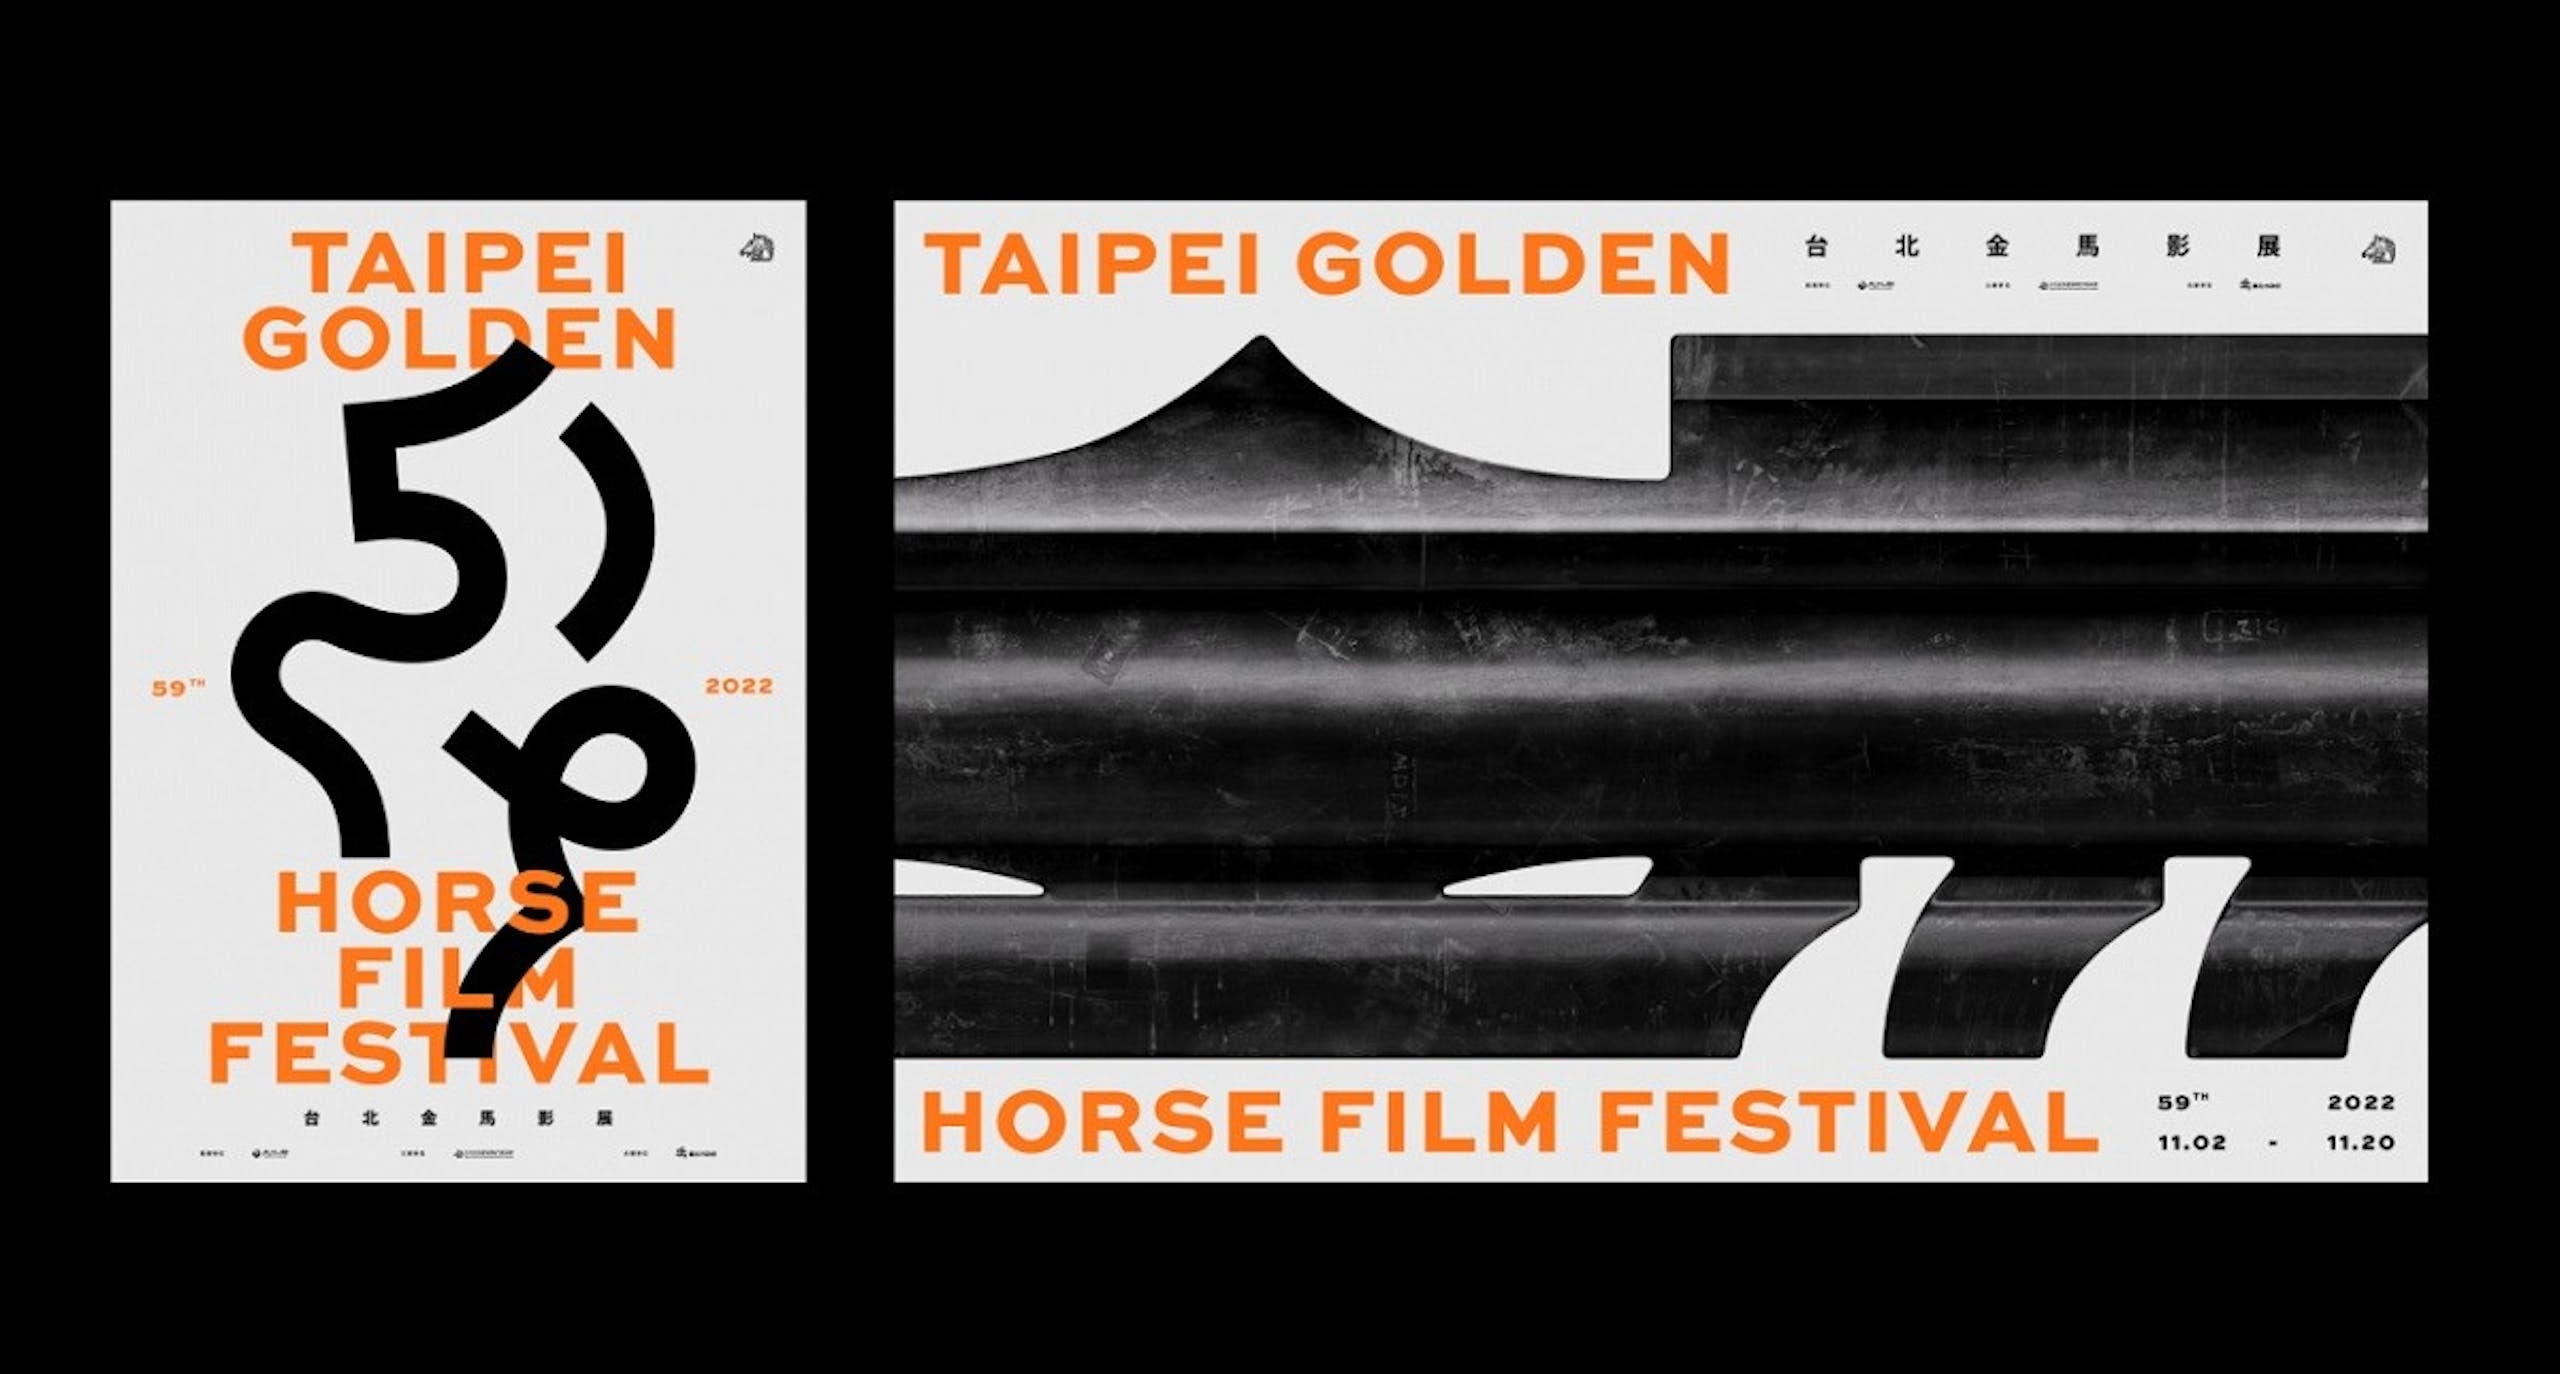 照片中提到了59TH、TAIPEI、GOLDEN，包含了金馬59主視覺、第59屆金馬獎、台北金馬影展、金馬獎、電影節